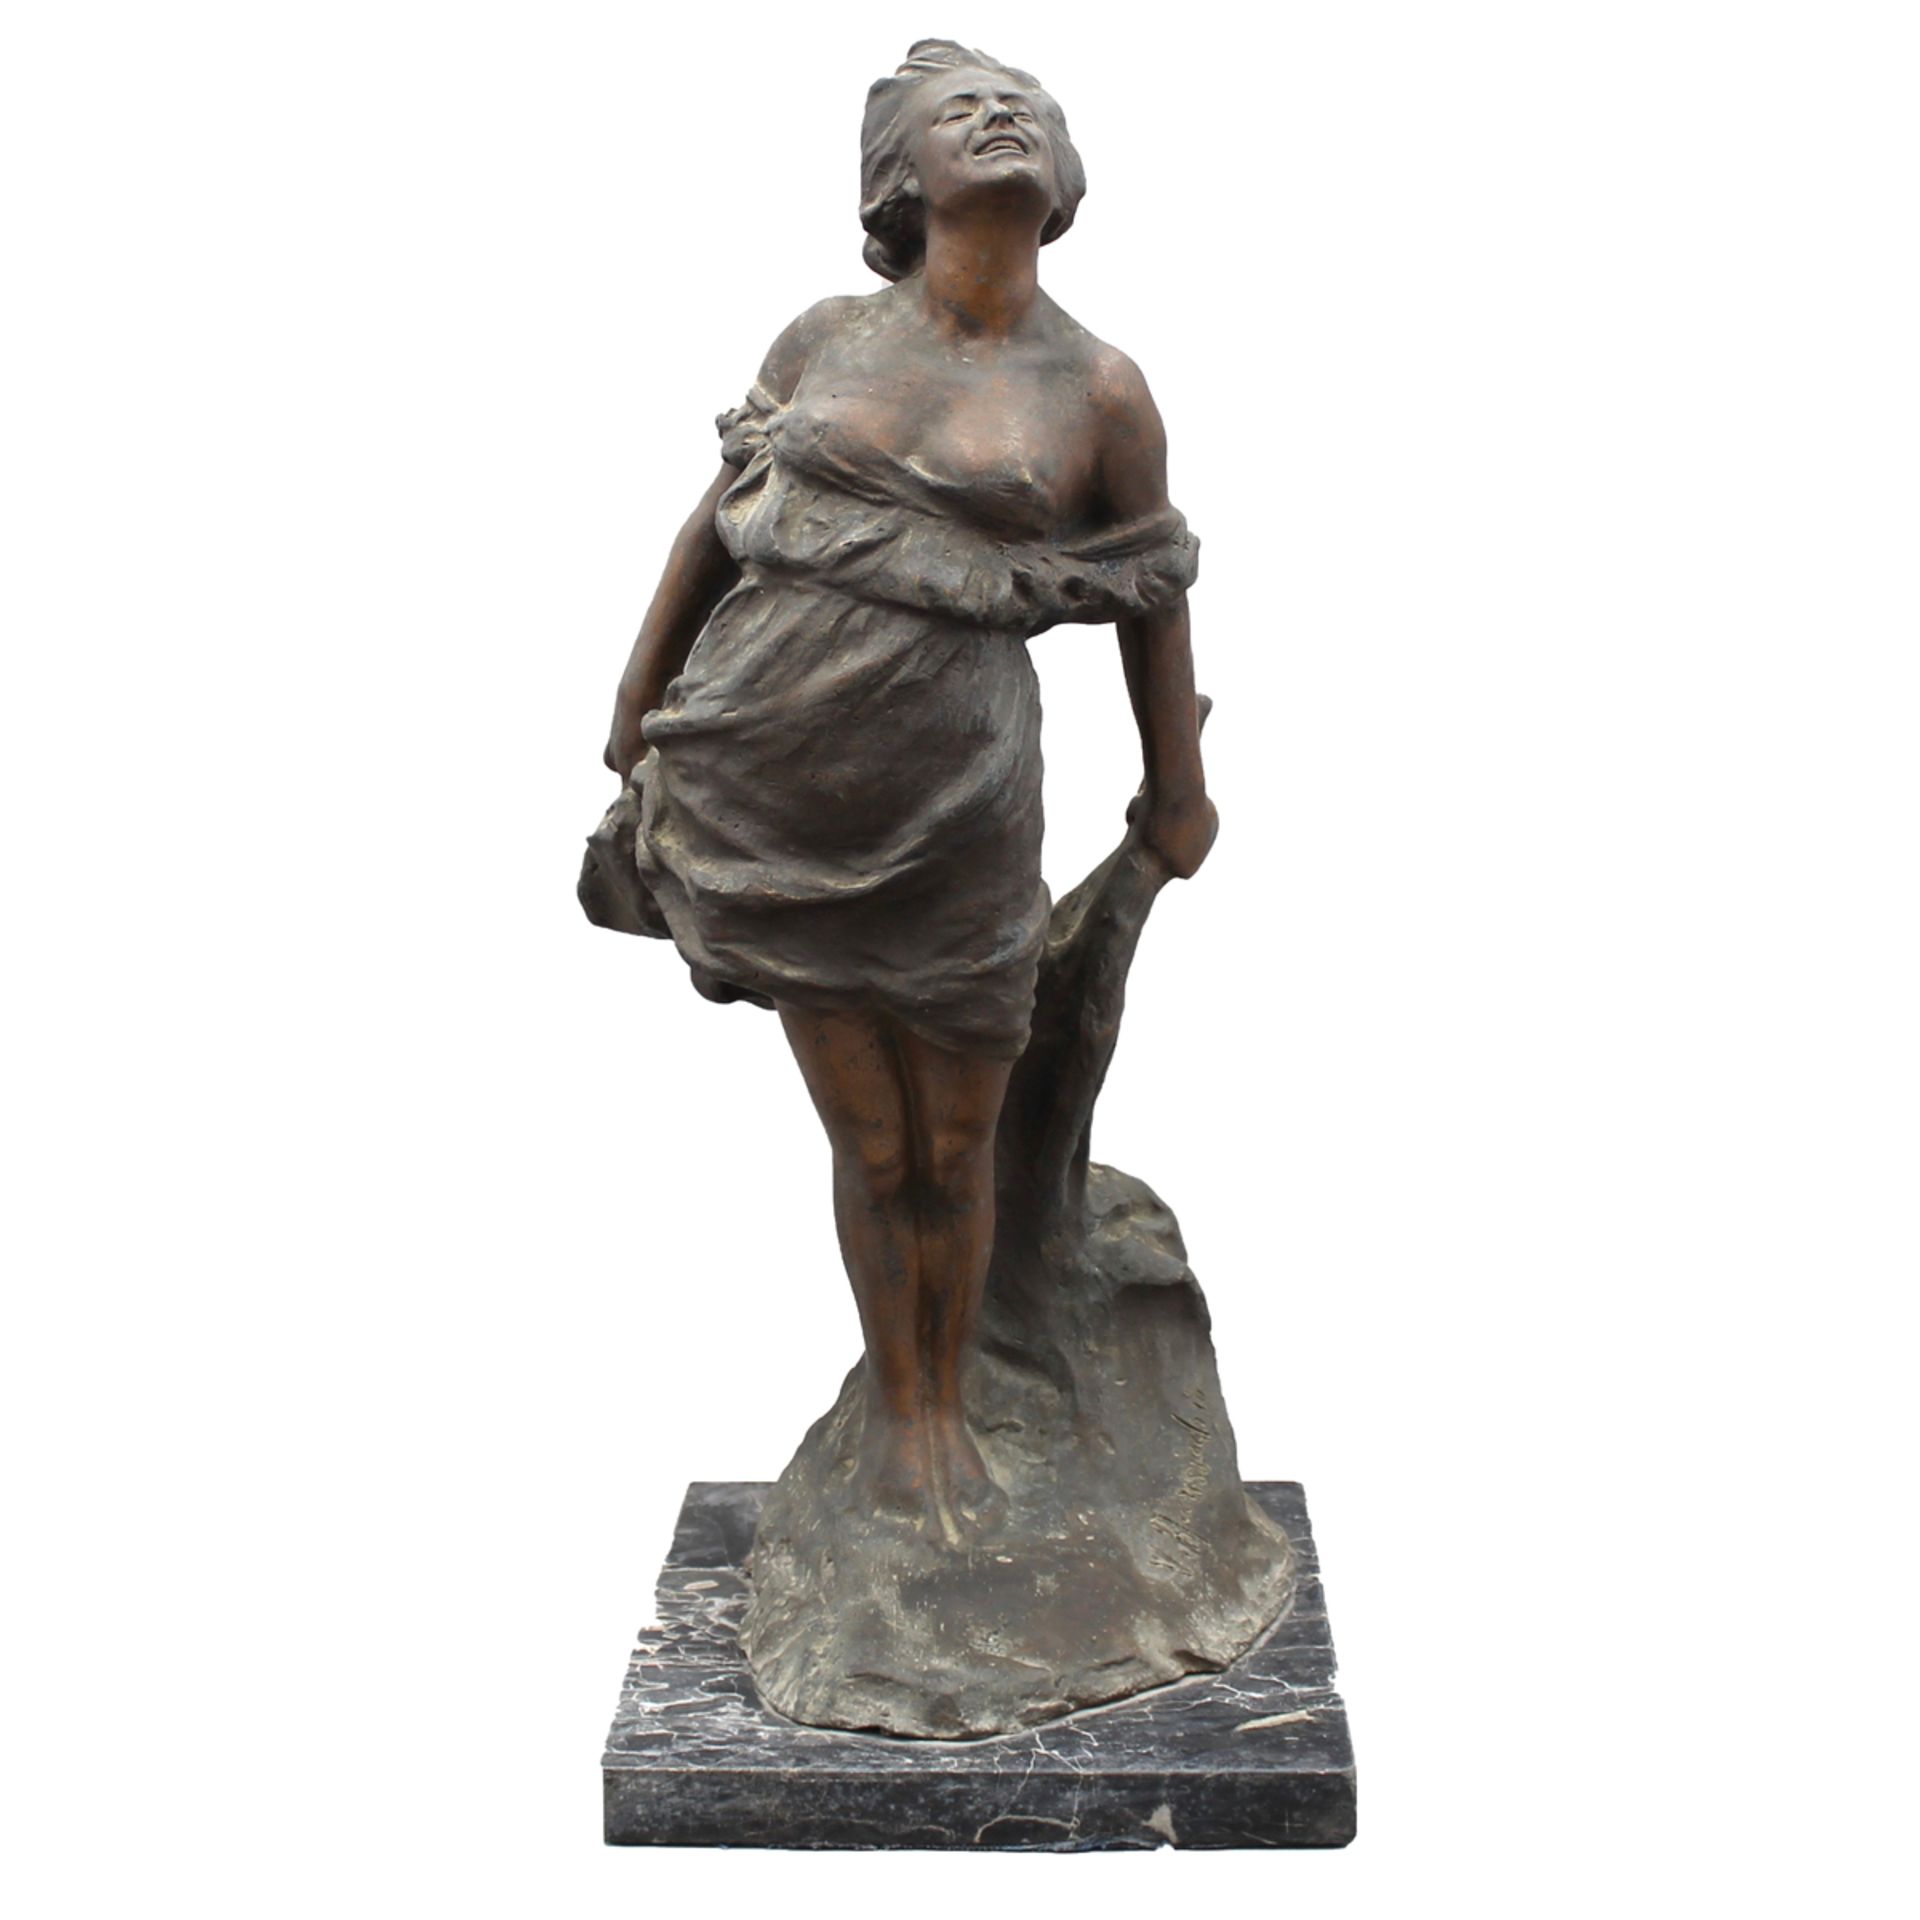 VINCENZO AURISICCHIO (1855/1926) “Figura di donna" - "Figure of a woman"